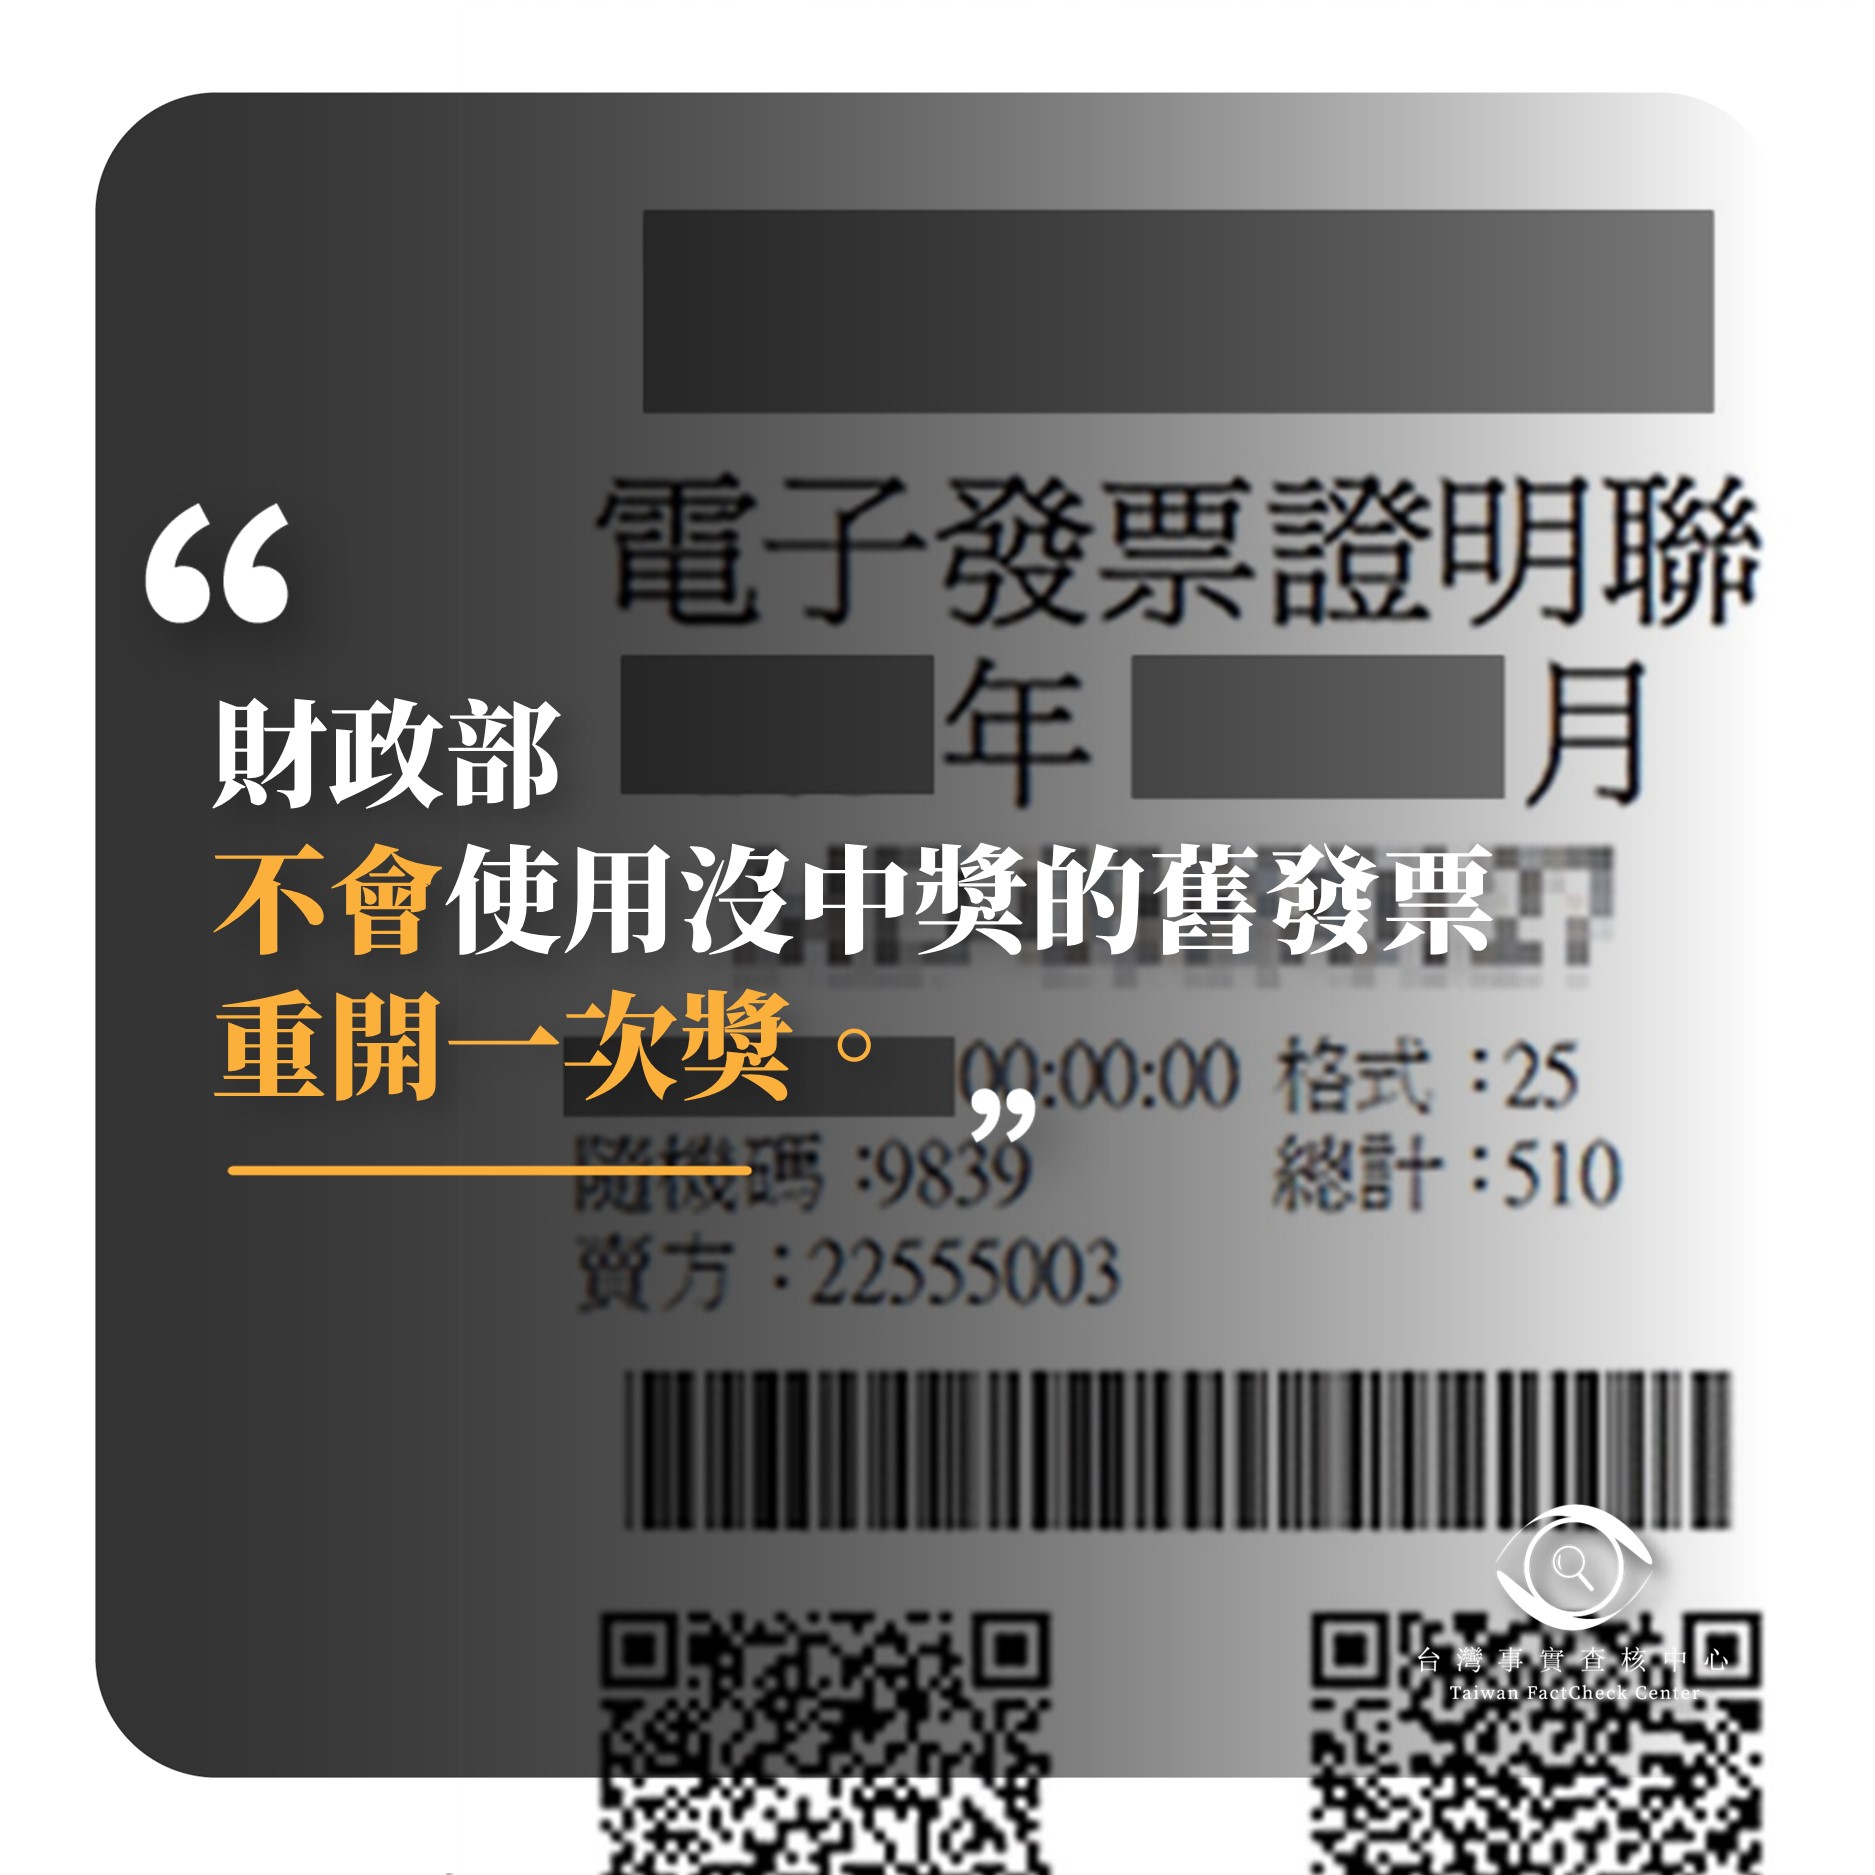 錯誤 網傳 這期發票如果沒有中不能丟掉六月還會開一次獎切記中央補助的 台灣事實查核中心